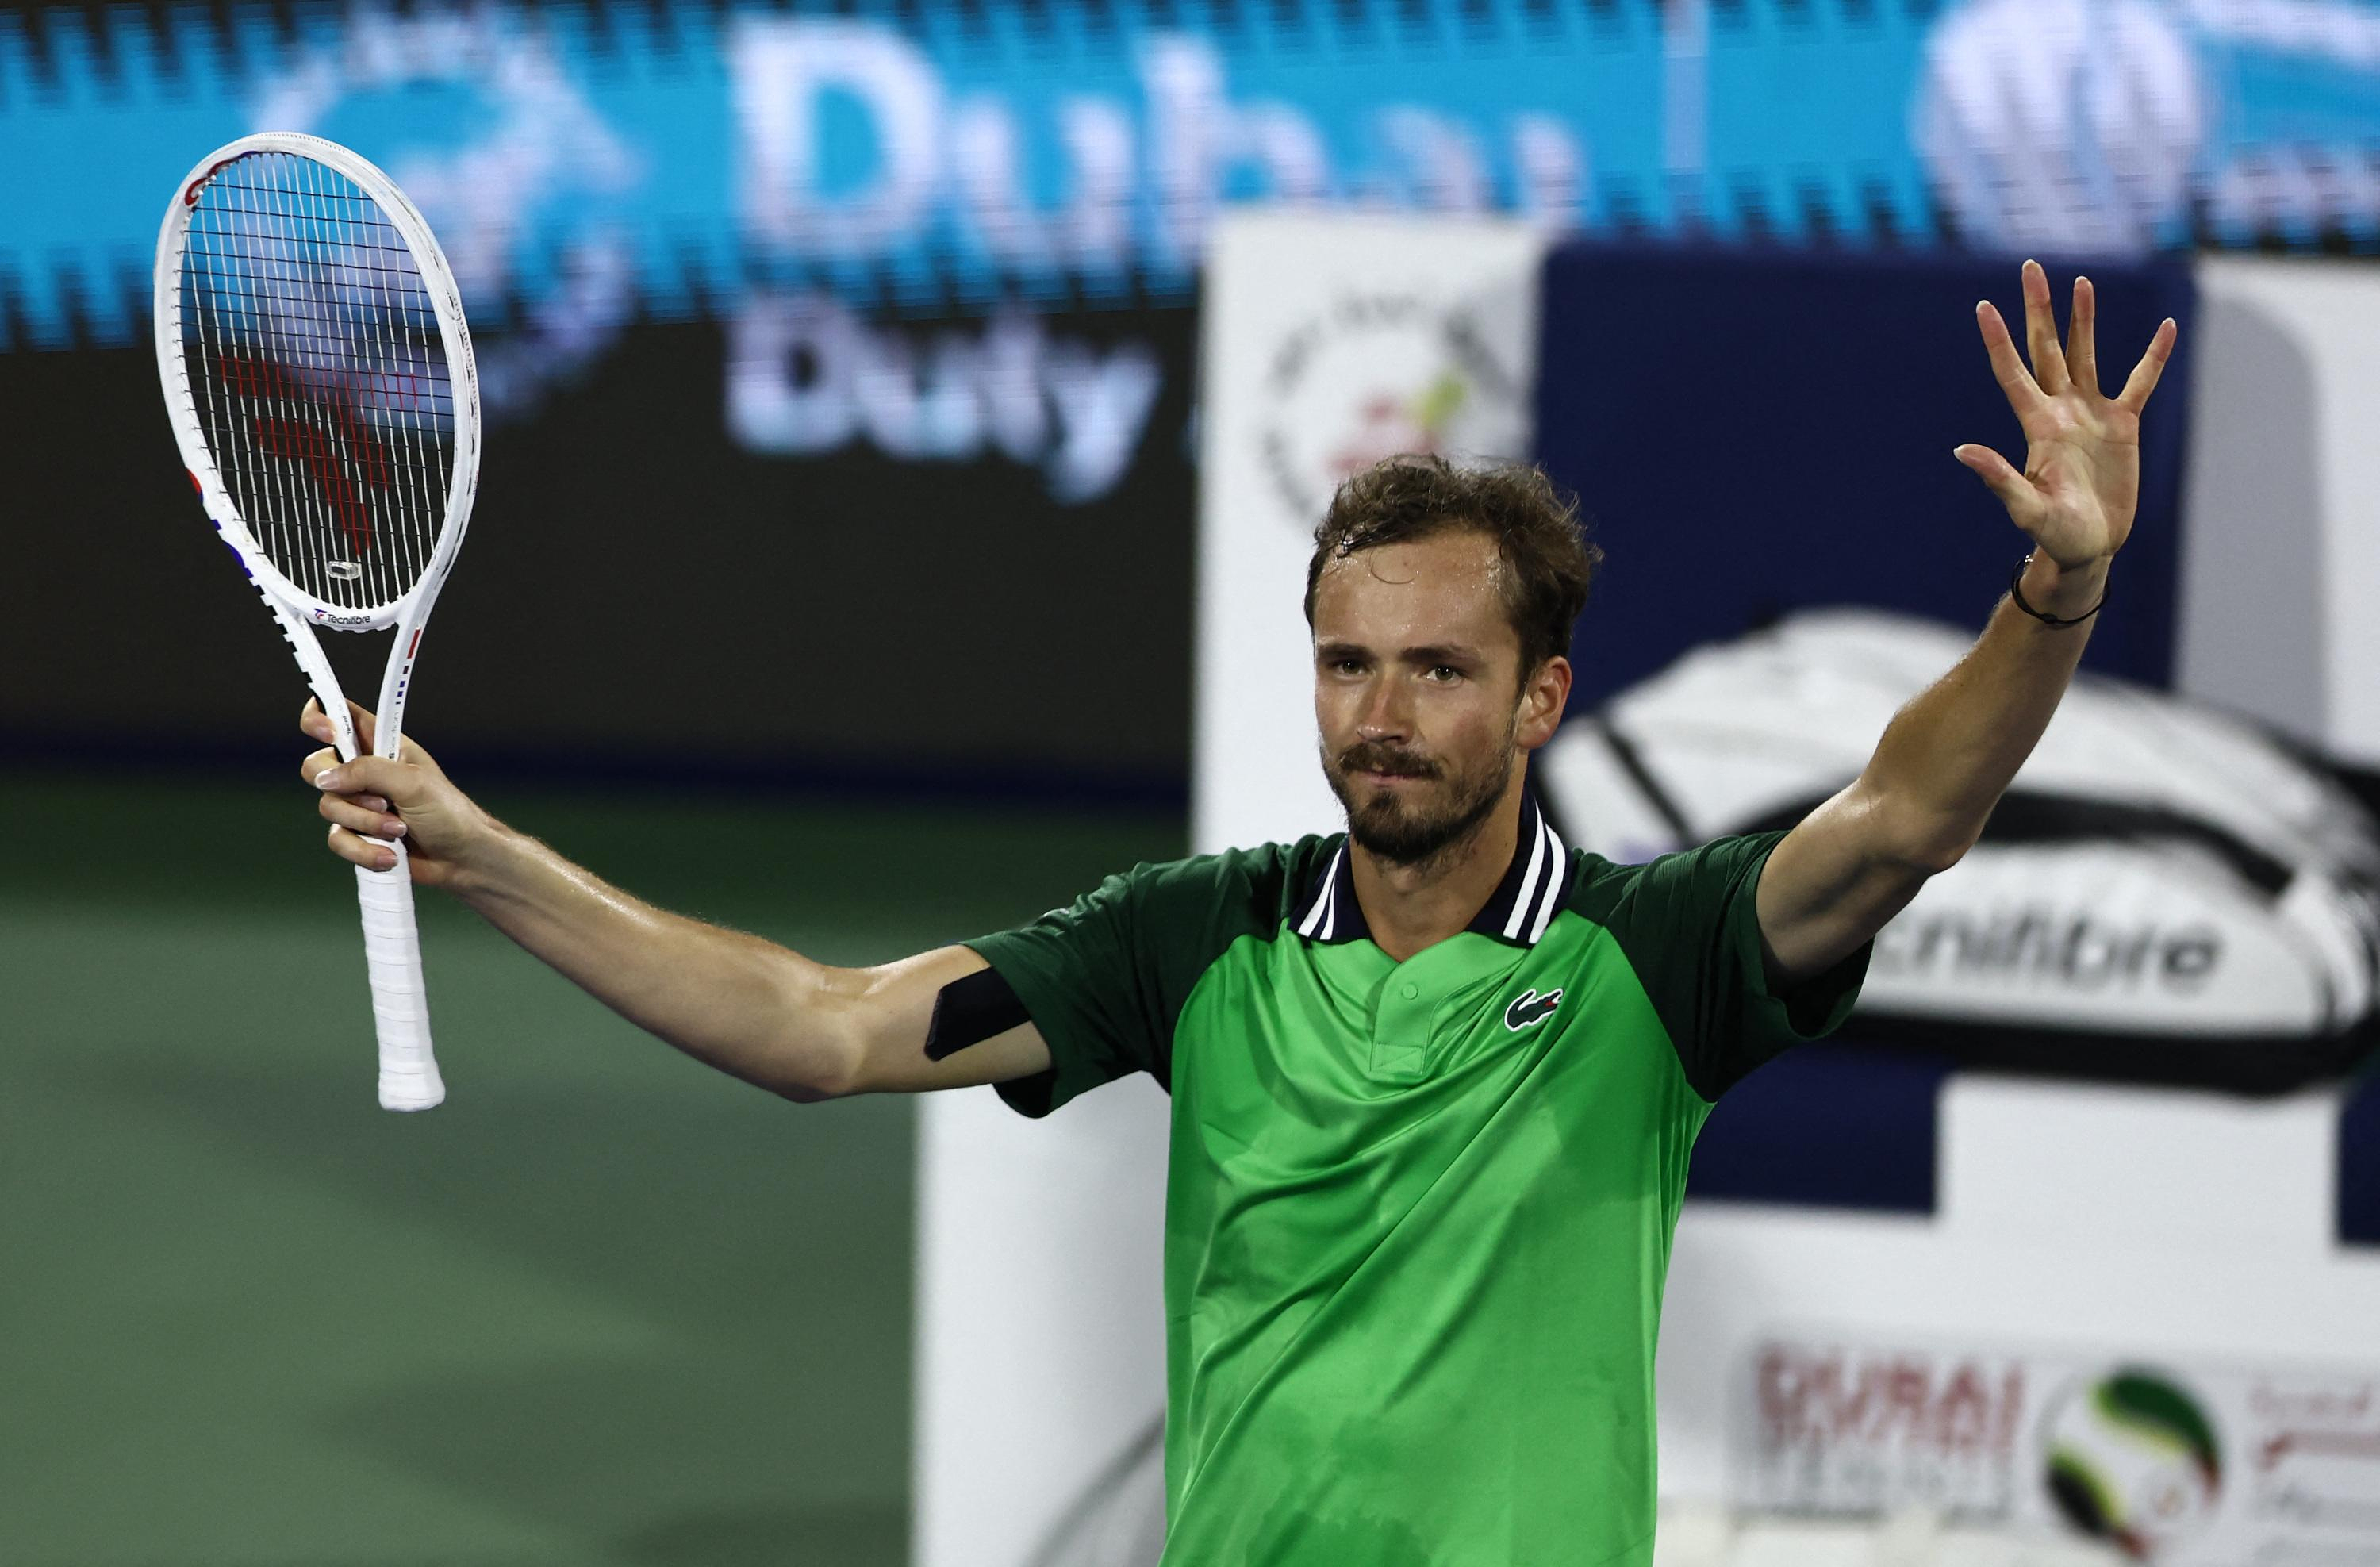 Tennis: Medvedev reaches the final four in Dubai